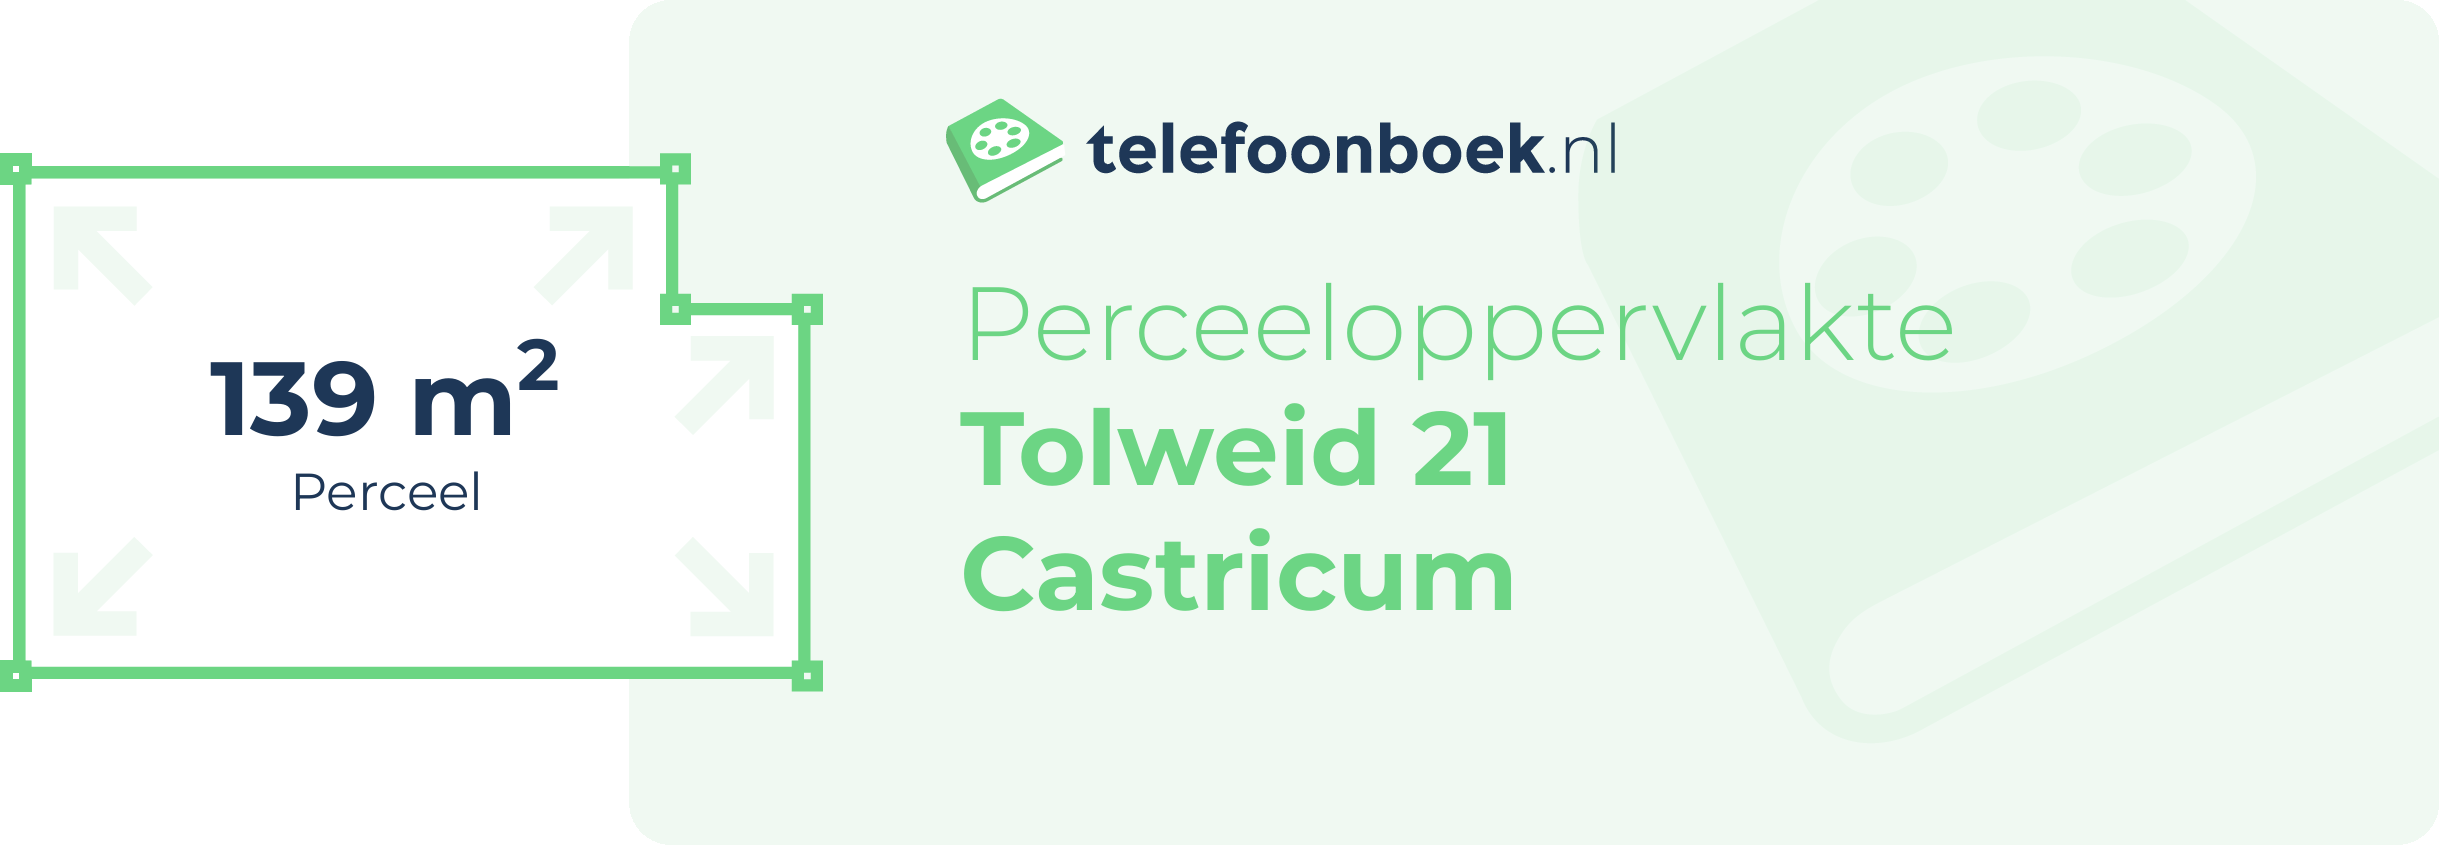 Perceeloppervlakte Tolweid 21 Castricum